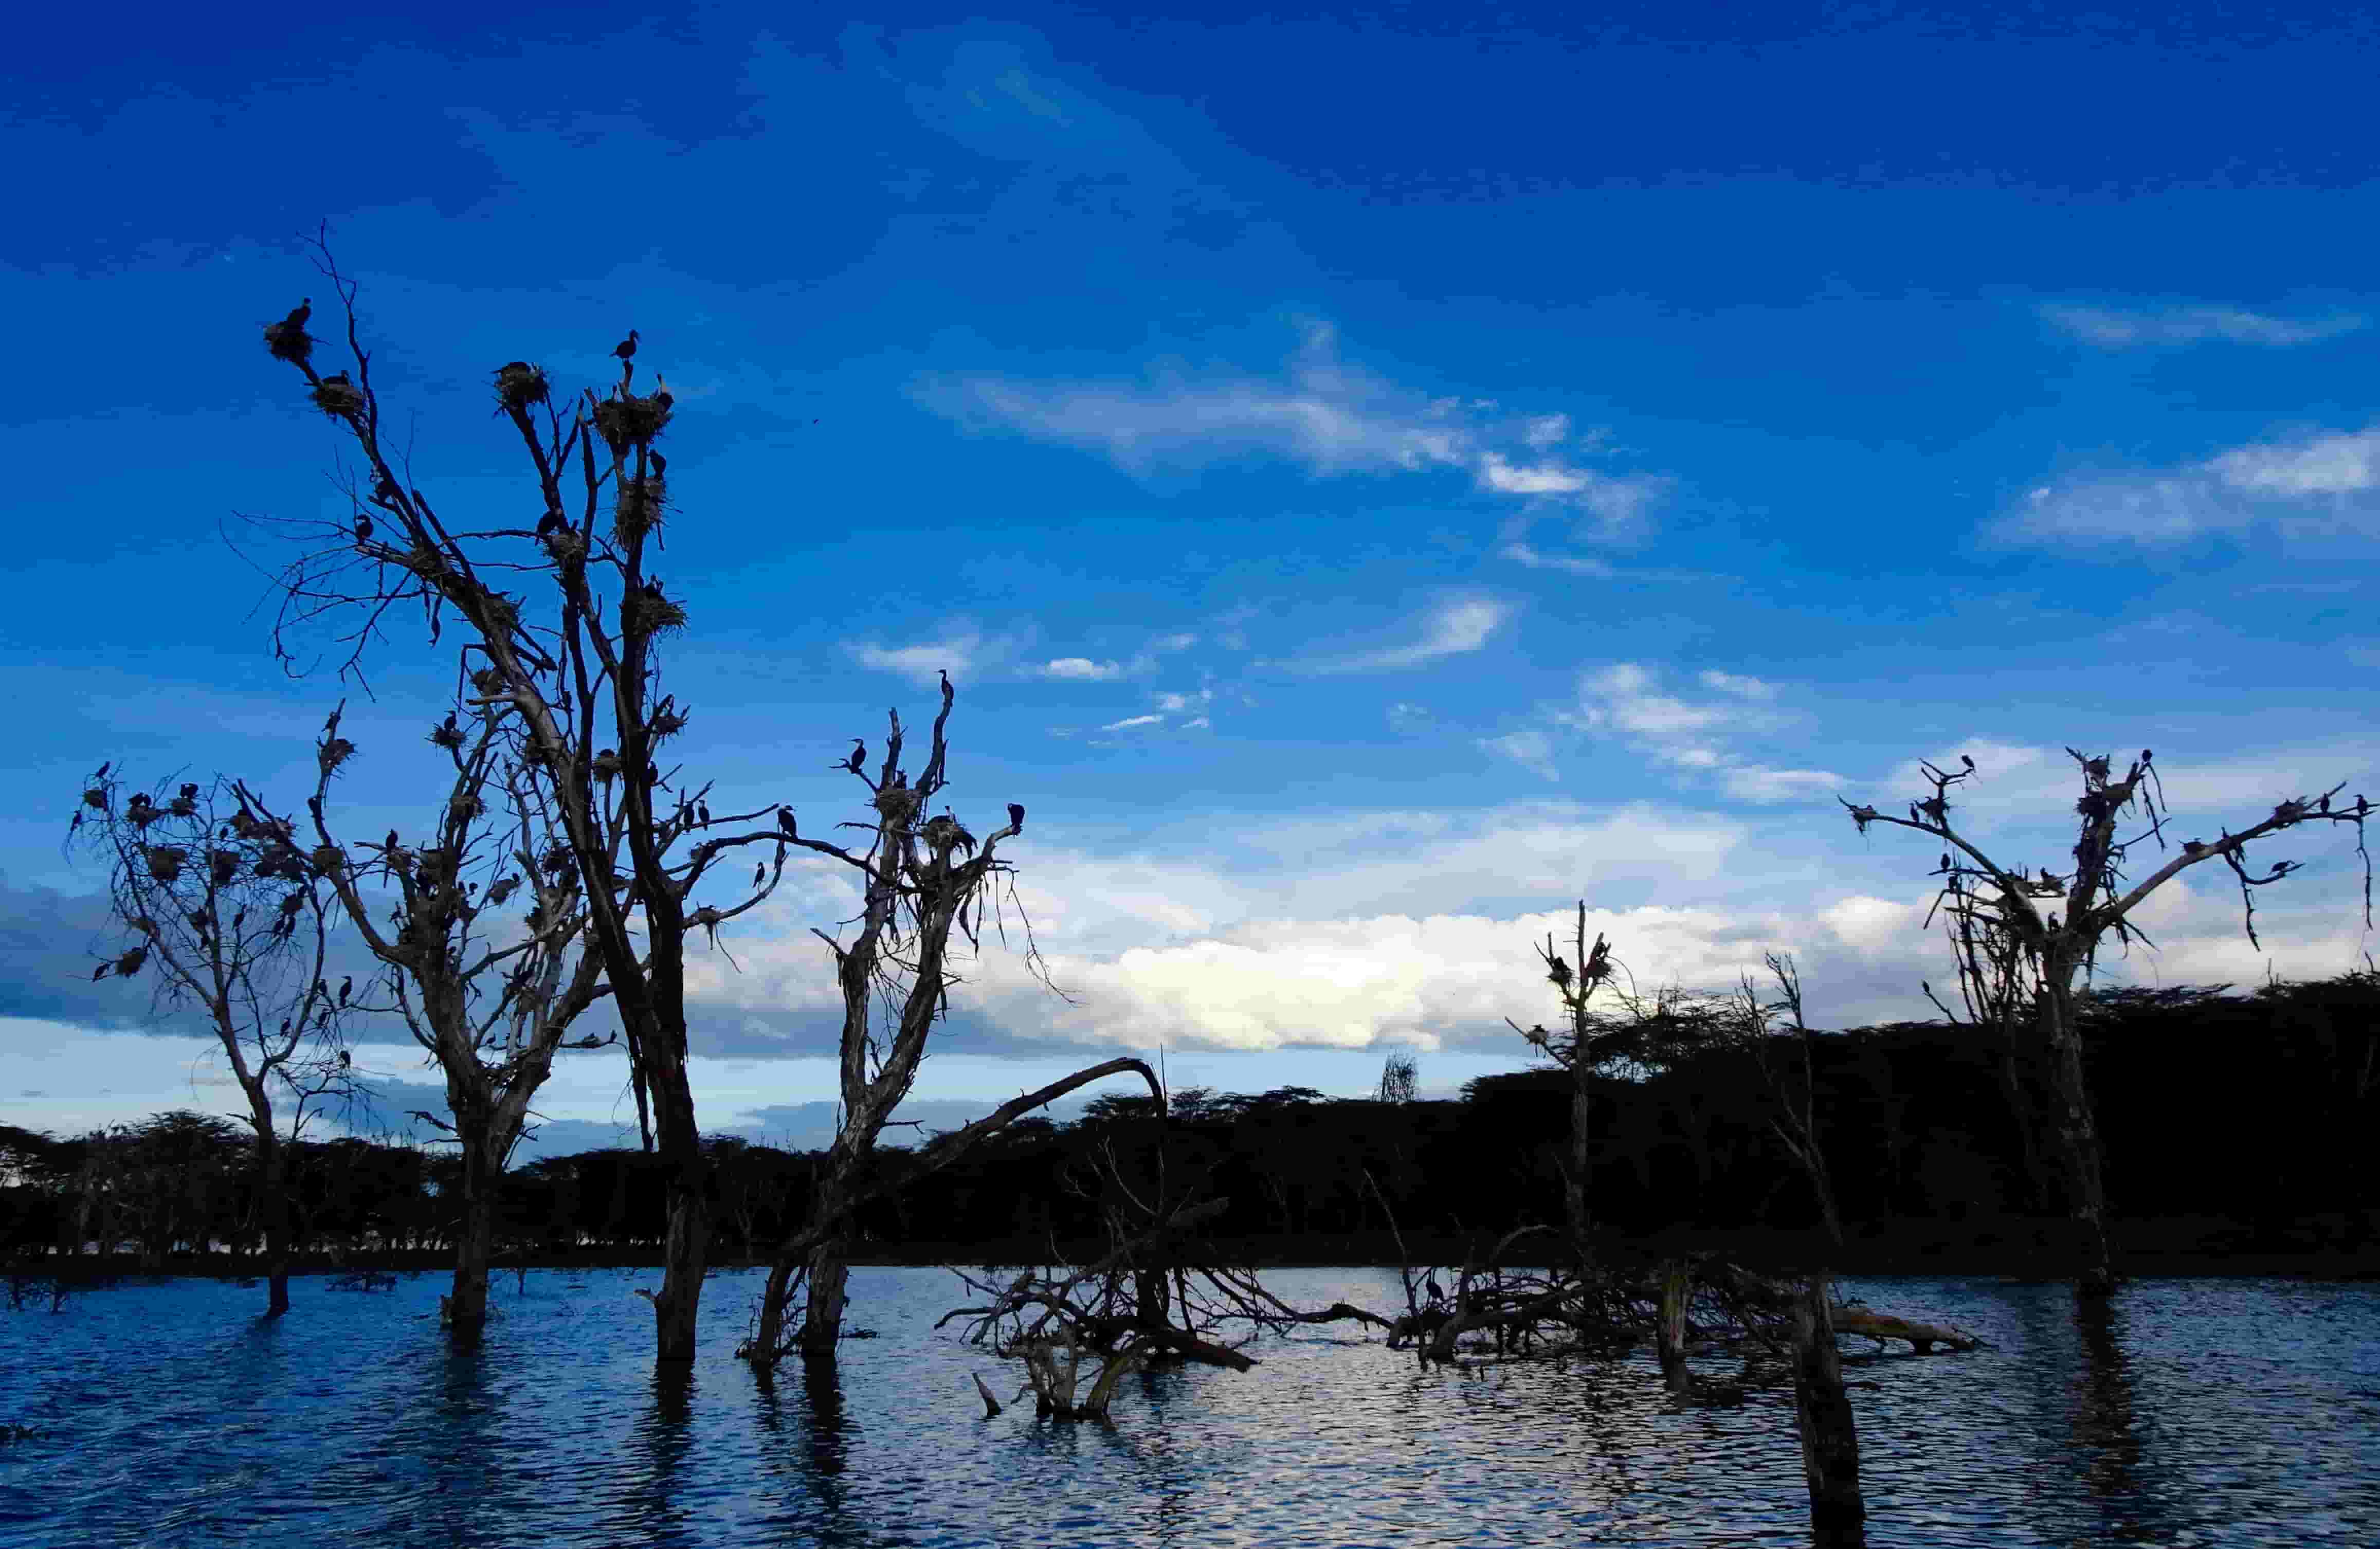 Lake Naivasha